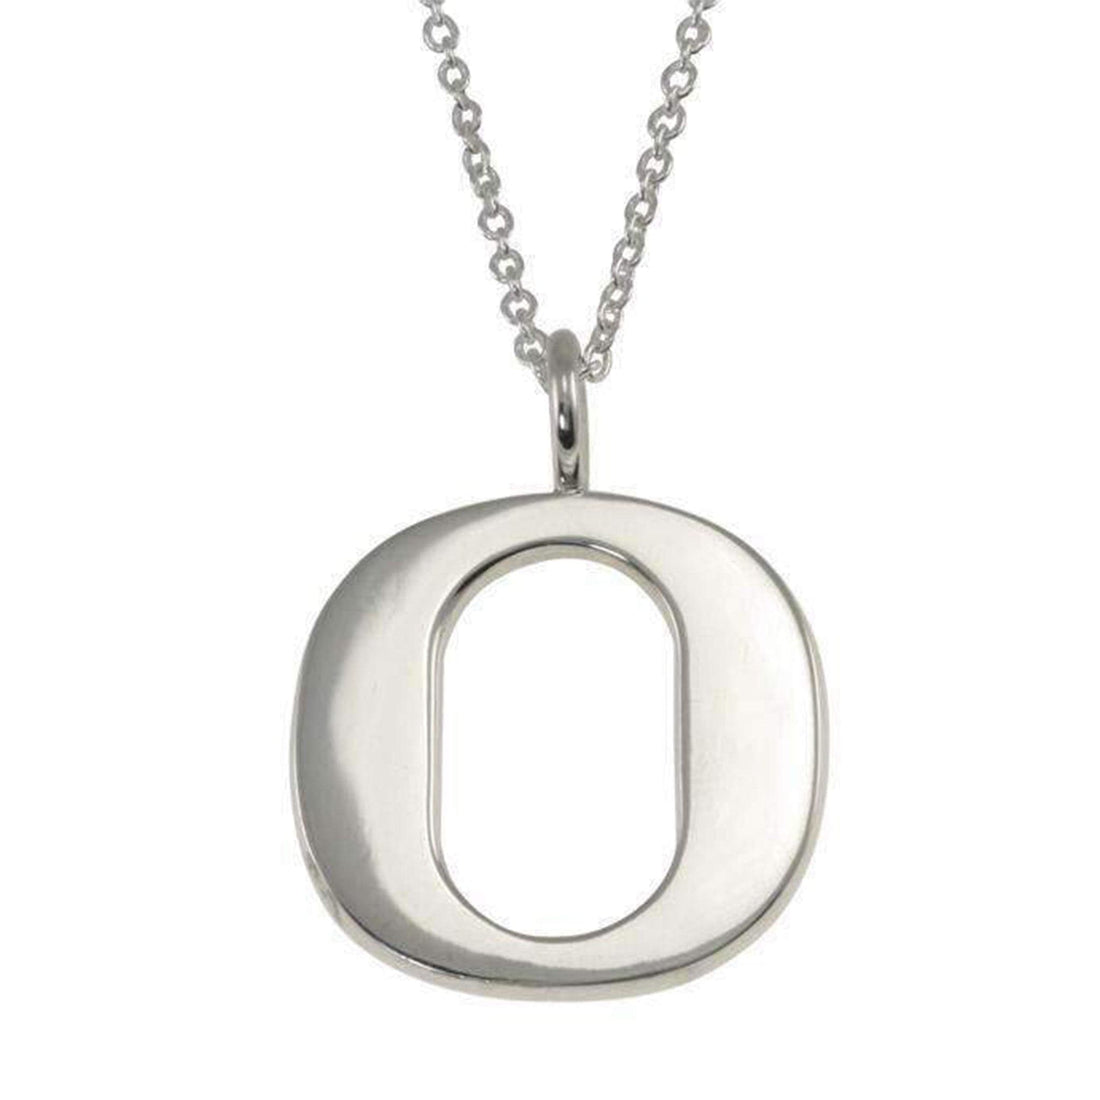 University of Oregon Ducks White Gold "O" Pendant Necklace